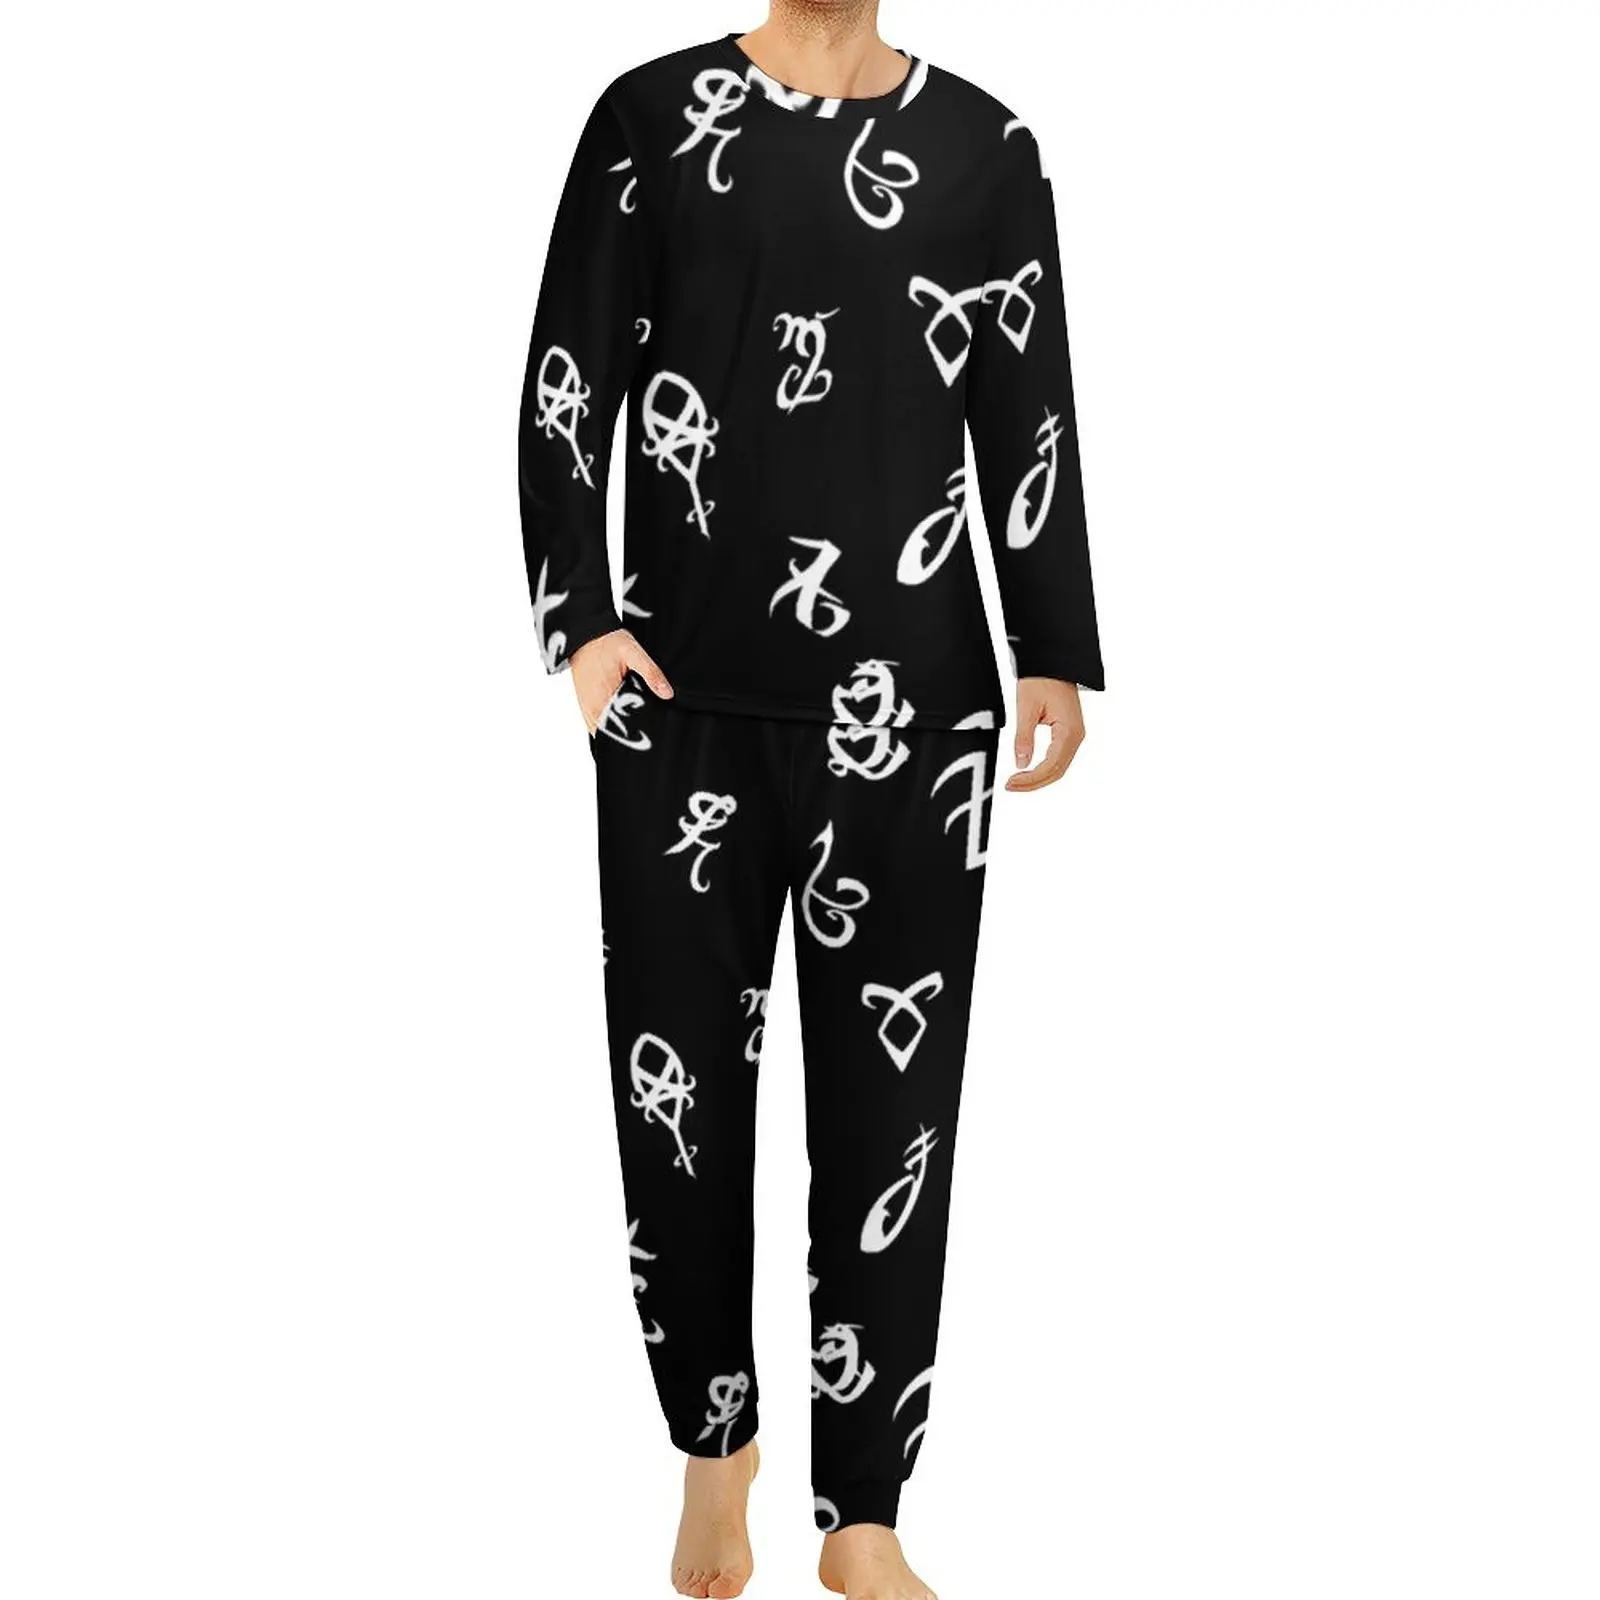 

Shadowhunters, пижама с ангелом, Осенний Повседневный домашний костюм со злым символом, мужской комплект из 2 предметов с графическим рисунком и длинным рукавом, милый пижамный комплект большого размера